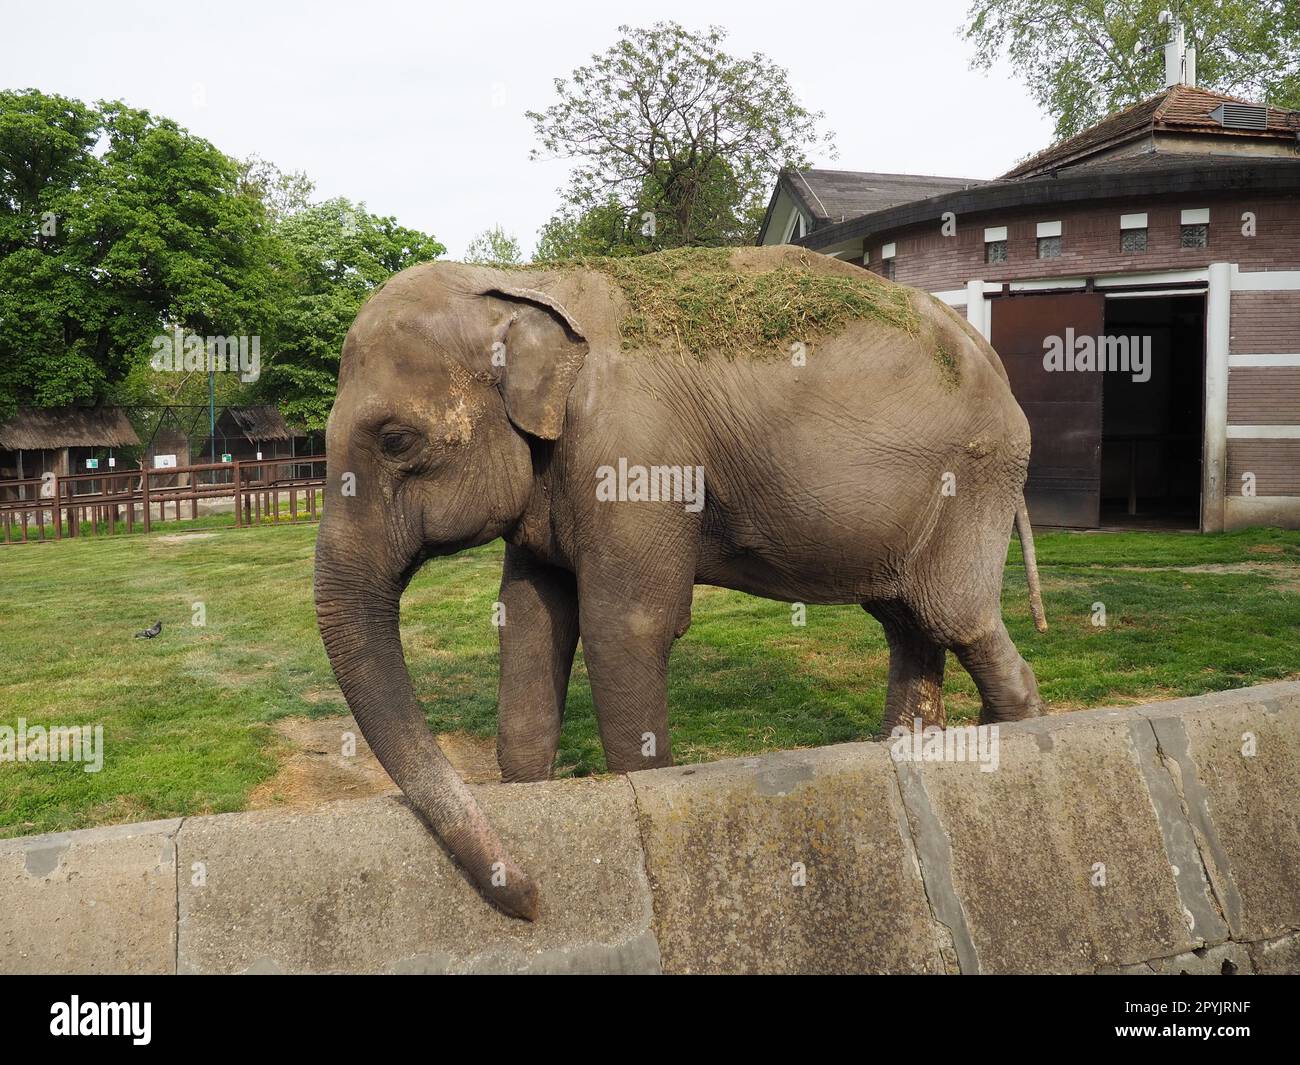 Der asiatische Elefant, oder indischer Elefant, Elephas maximus, ist ein Säugetier der Proboscis-Ordnung, eine Gattung asiatischer Elefanten Elephas und eine von drei modernen Arten der Elefantenfamilie. Elefanten gehen Stockfoto